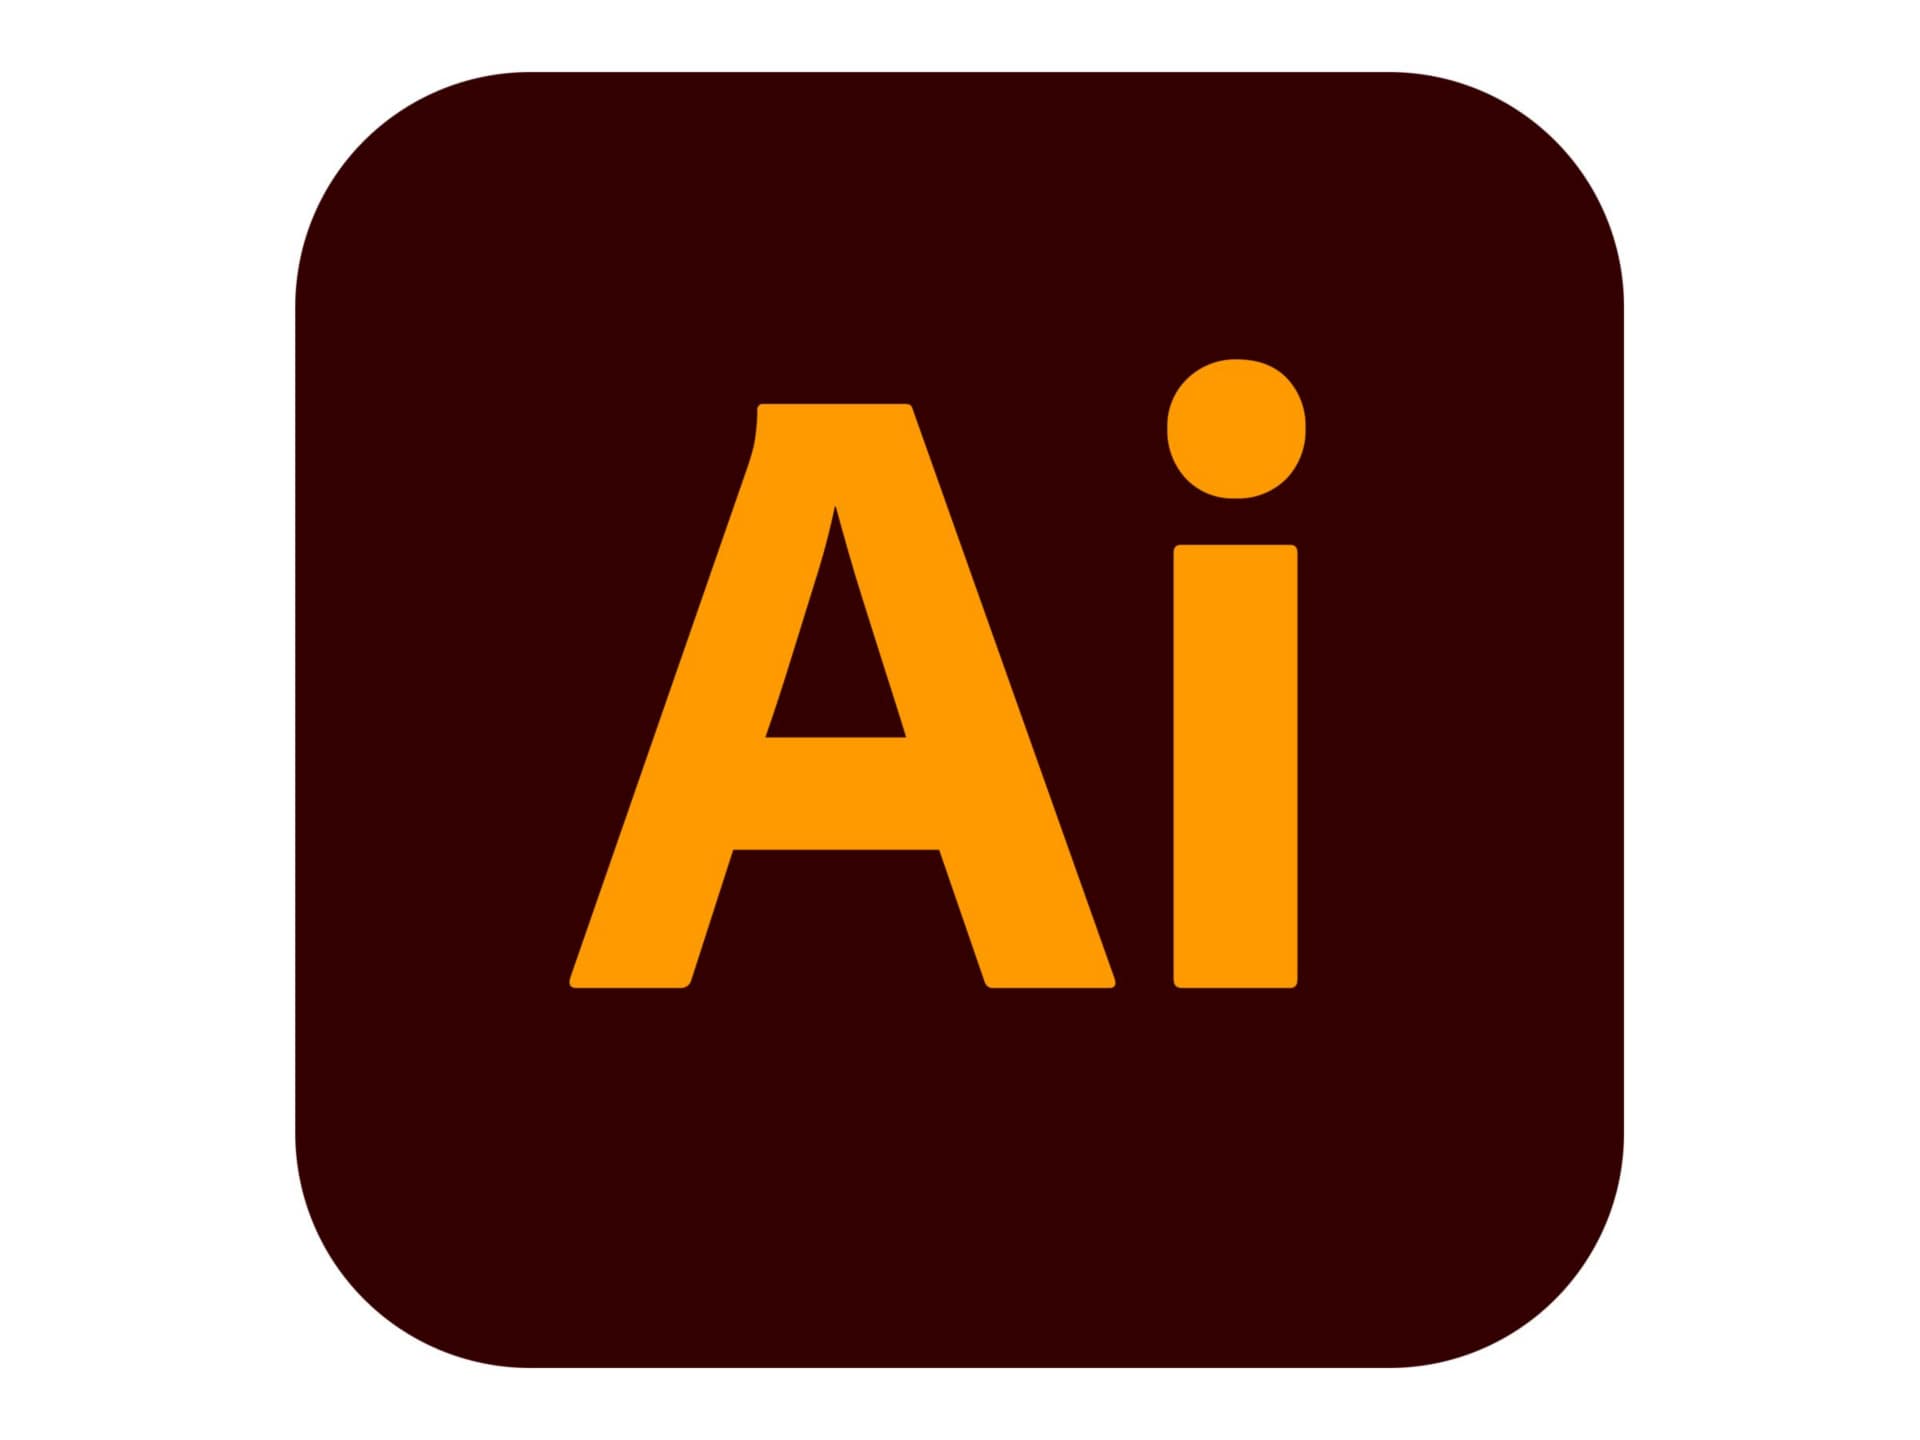 Adobe Illustrator Pro for enterprise - Subscription New (annual) - 1 user